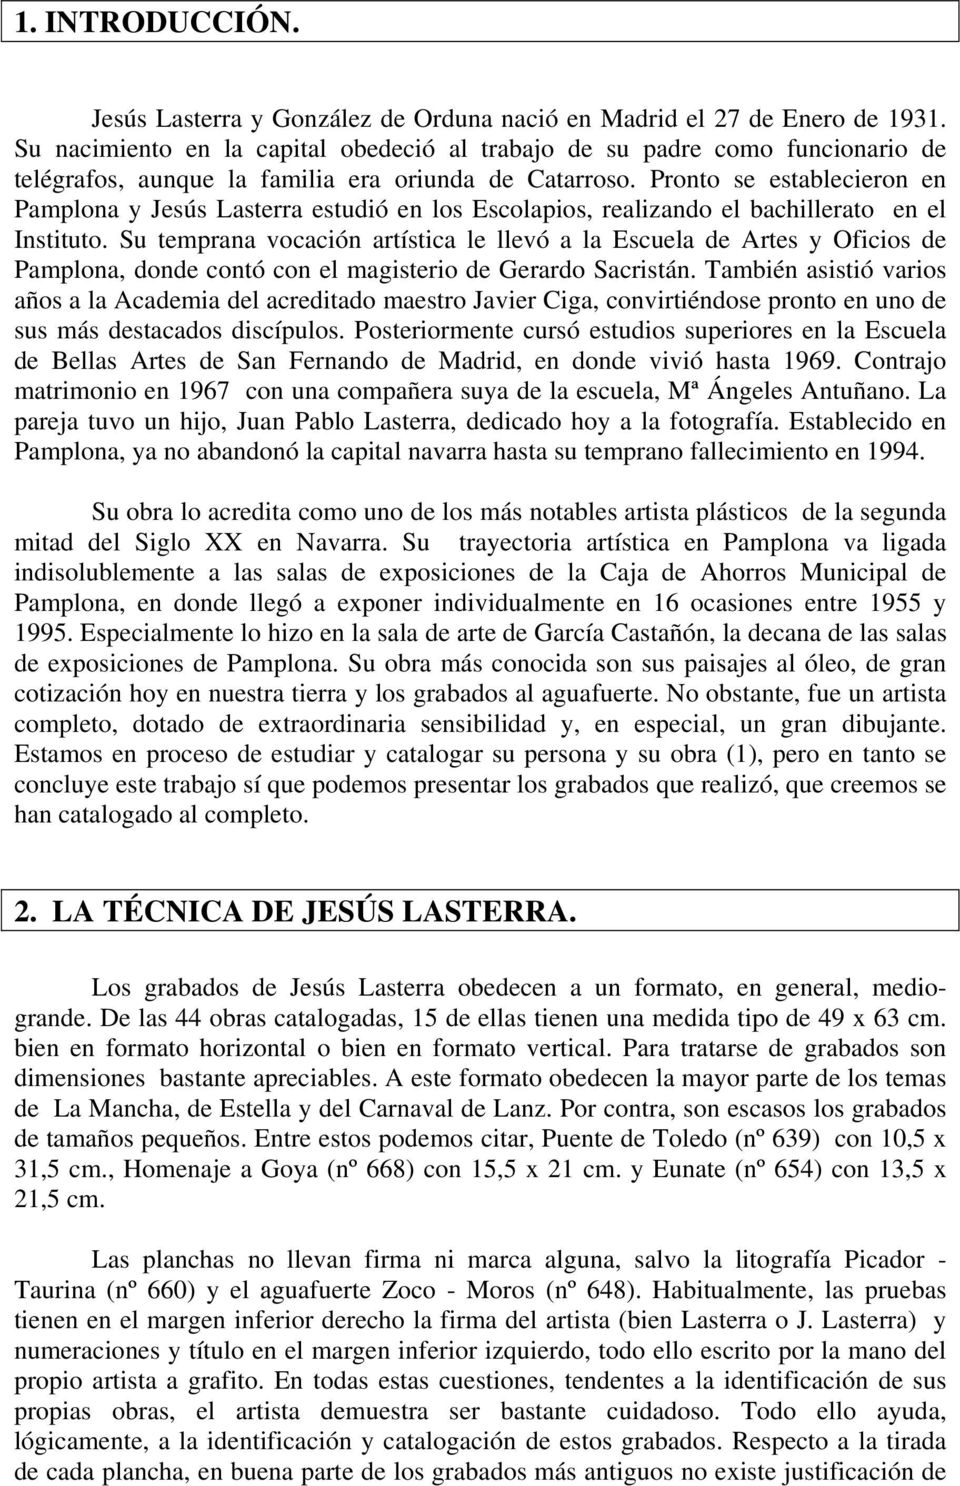 Pronto se establecieron en Pamplona y Jesús Lasterra estudió en los Escolapios, realizando el bachillerato en el Instituto.